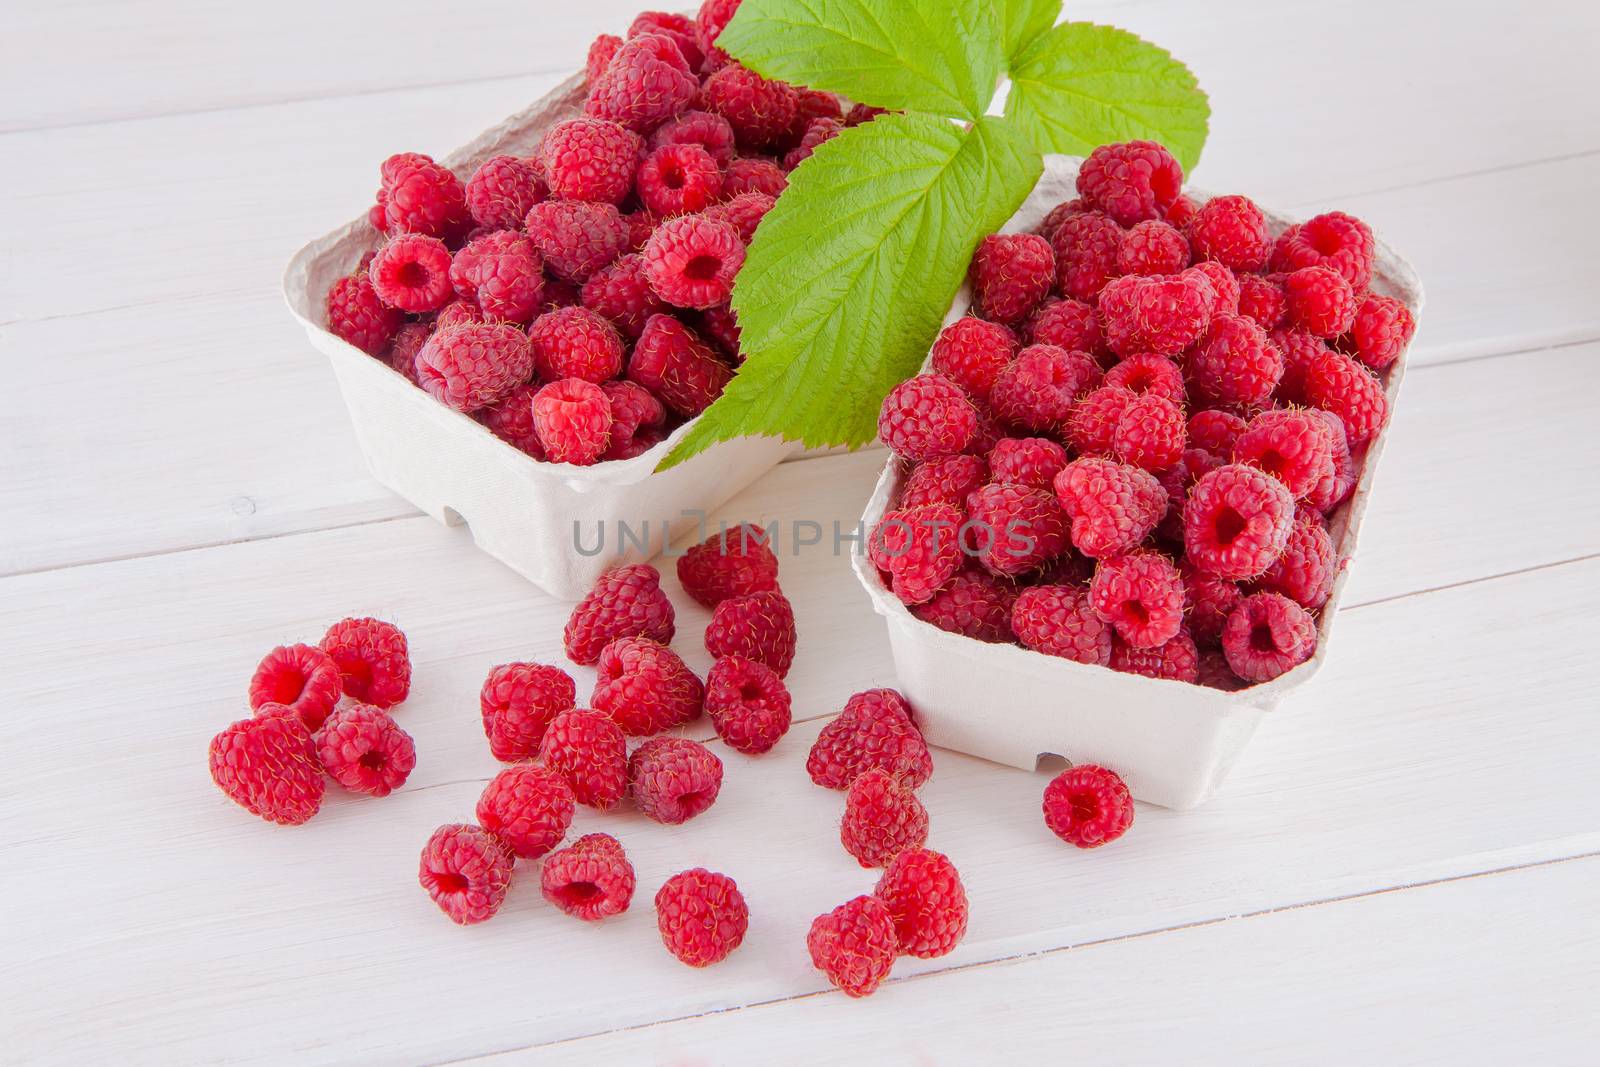 Raspberries on a table by Gbuglok